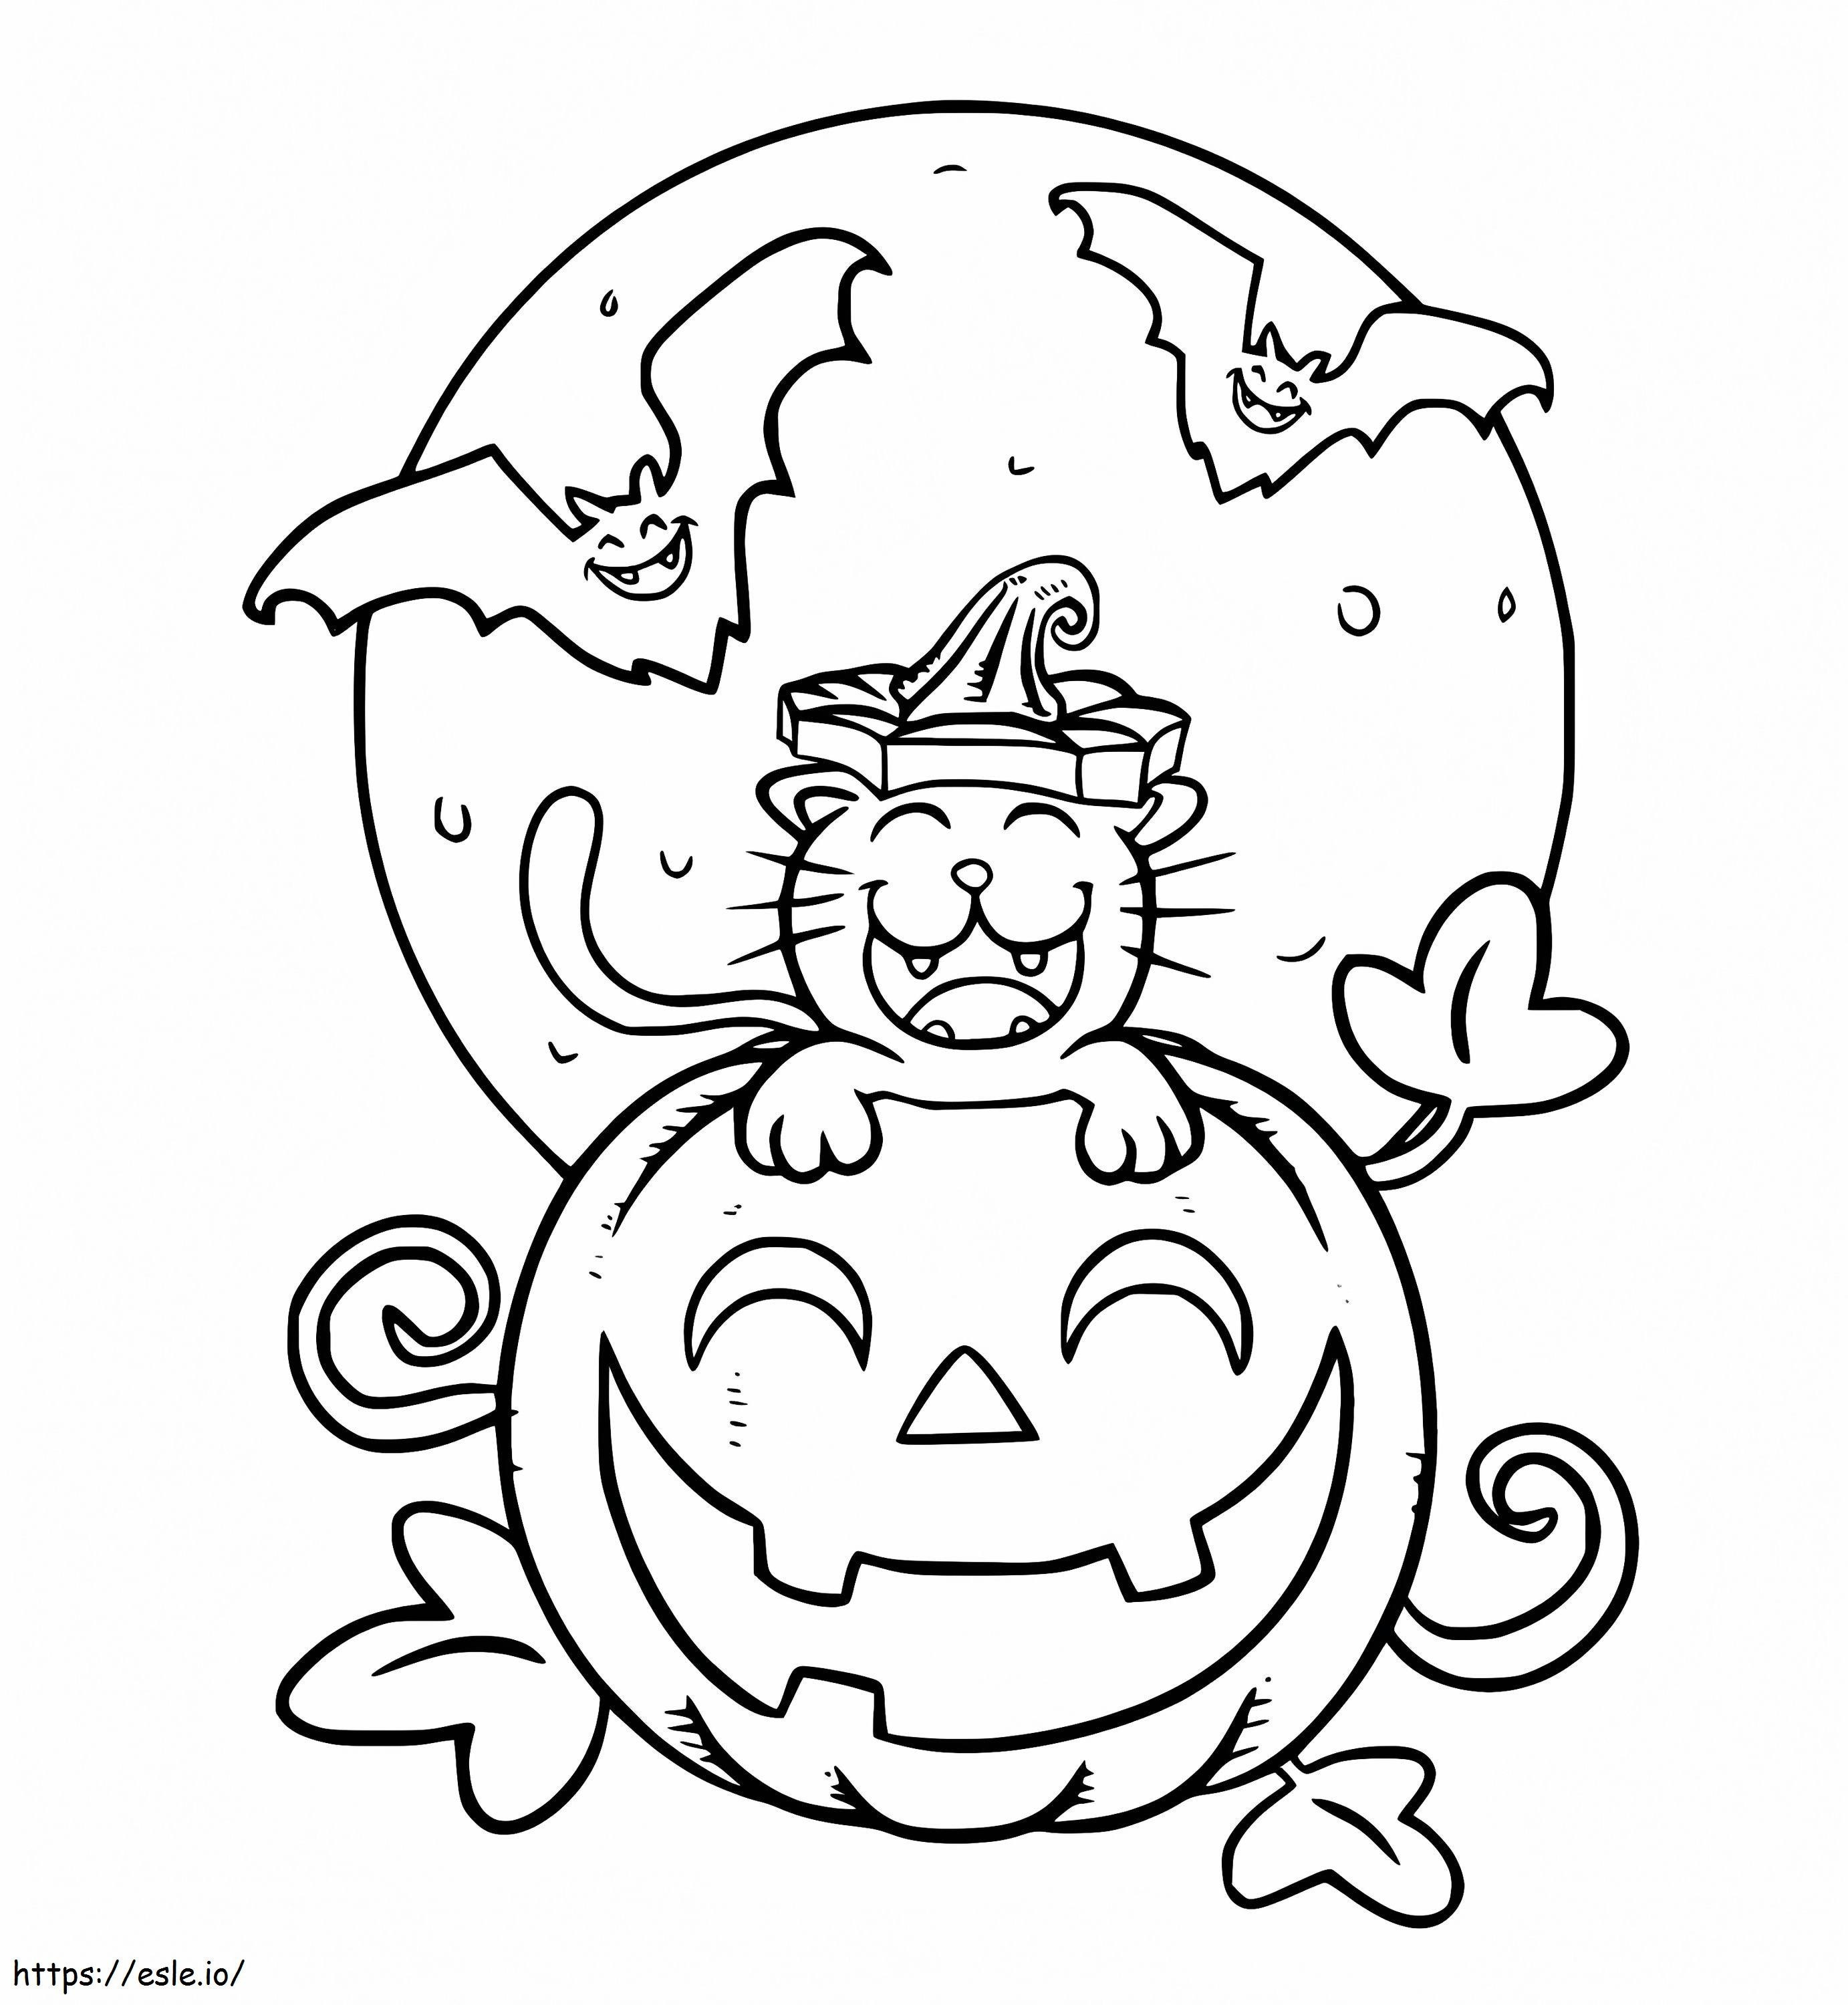 Halloweenowy Kot I Księżyc kolorowanka